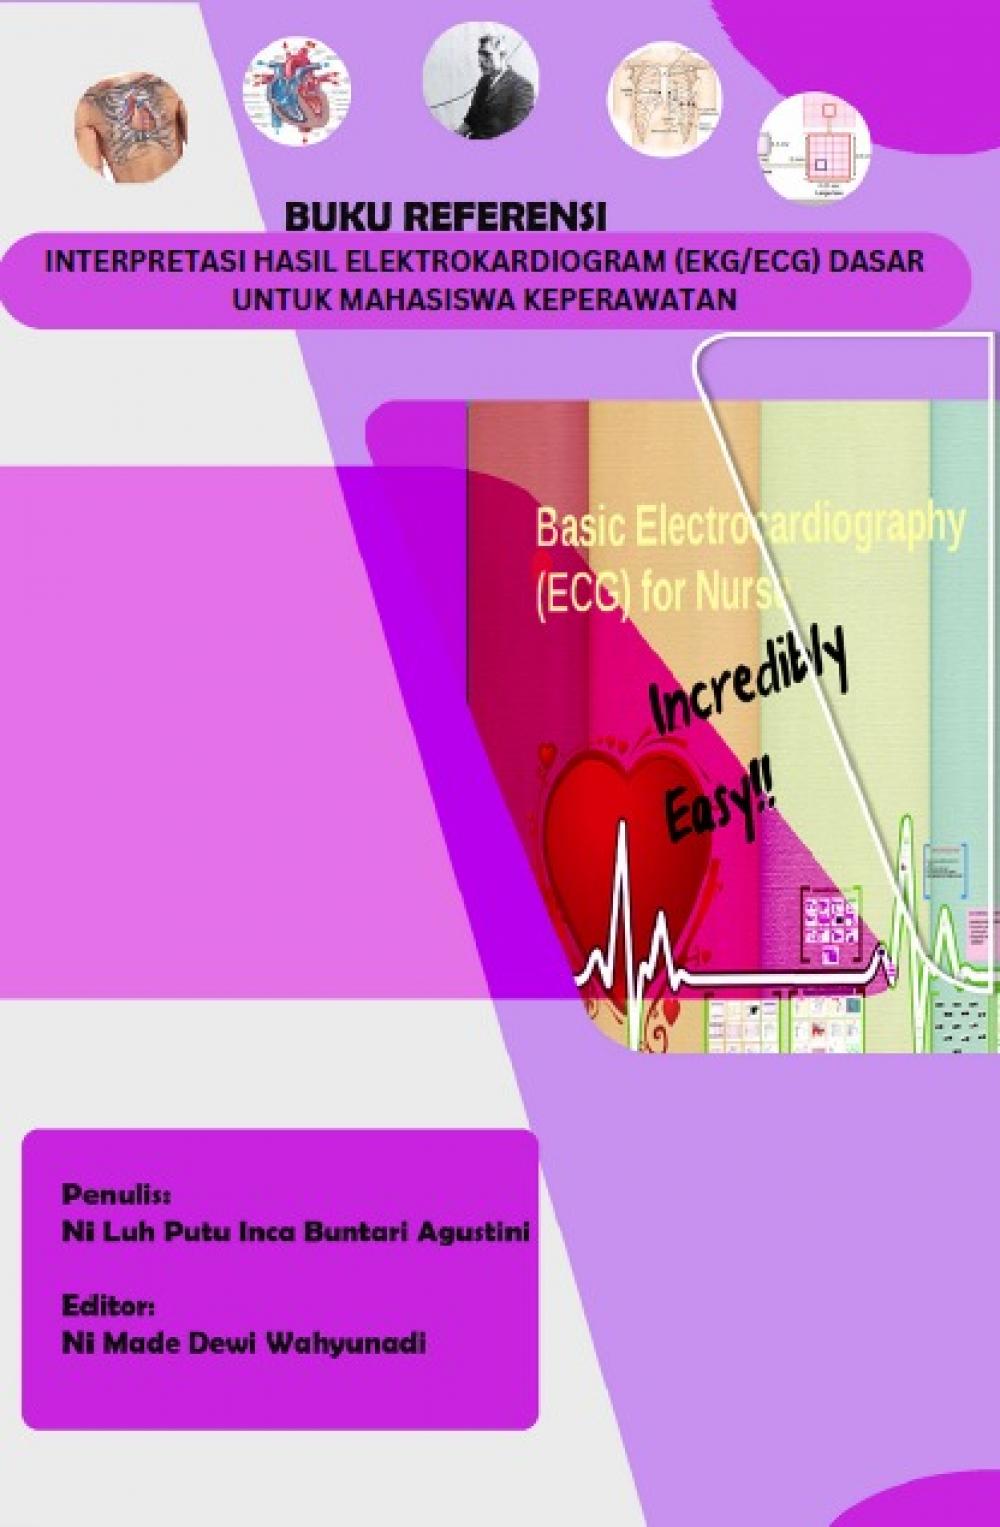 INTERPRETASI HASIL ELEKTROKARDIOGRAM (EKG/ECG) DASAR UNTUK MAHASISWA KEPERAWATAN